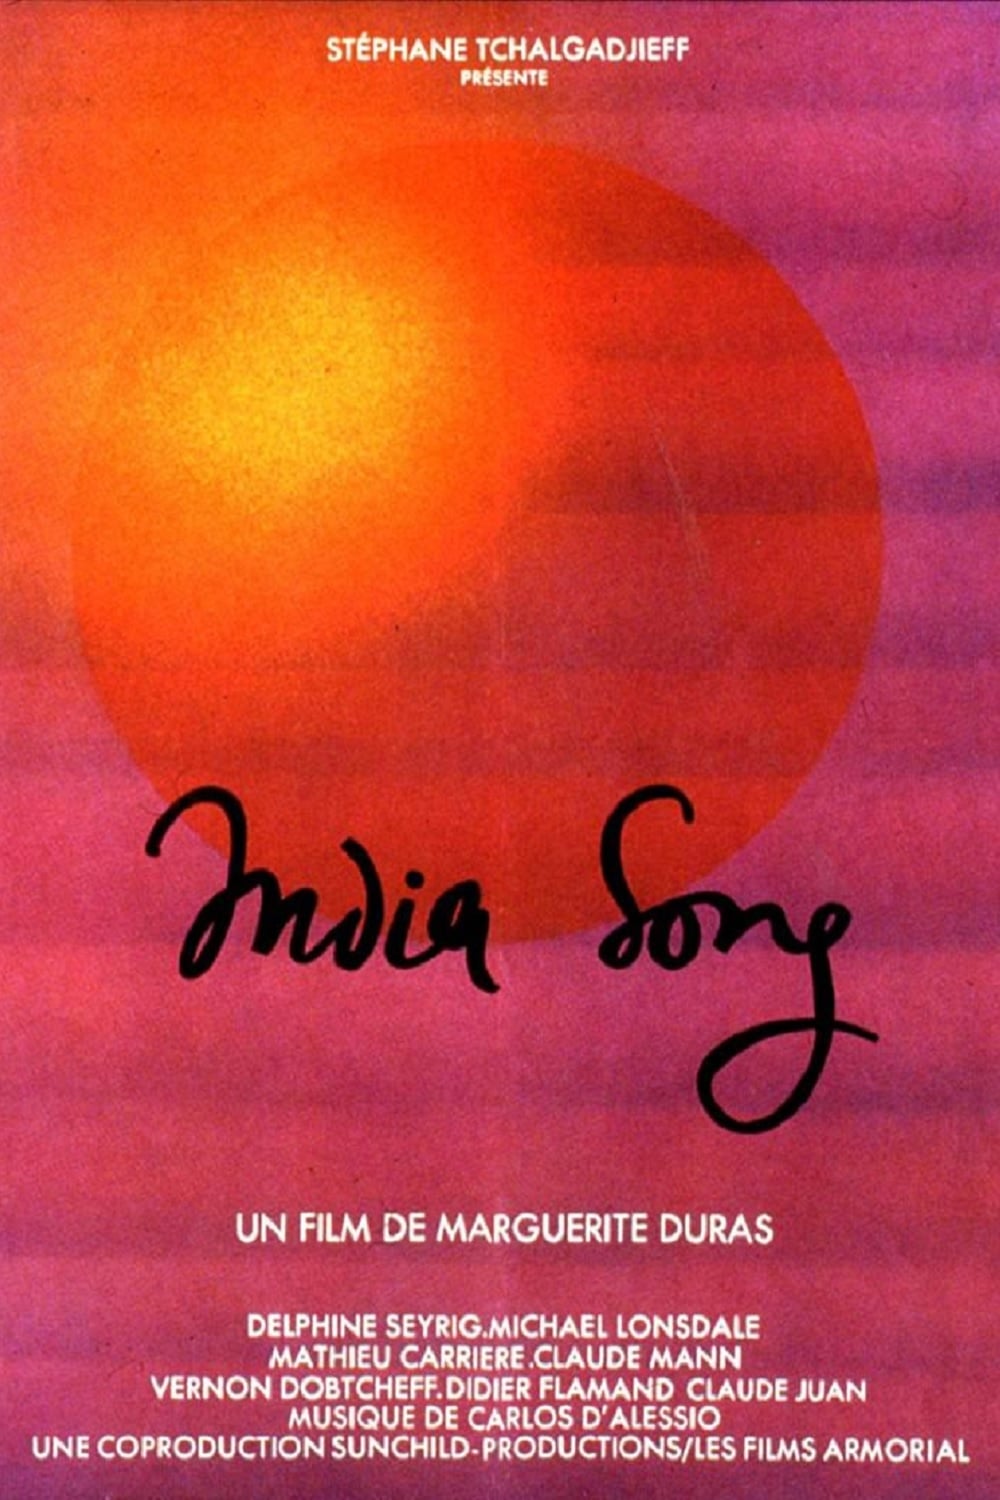 India Song Crítica Filme Marguerite Duras Pôster